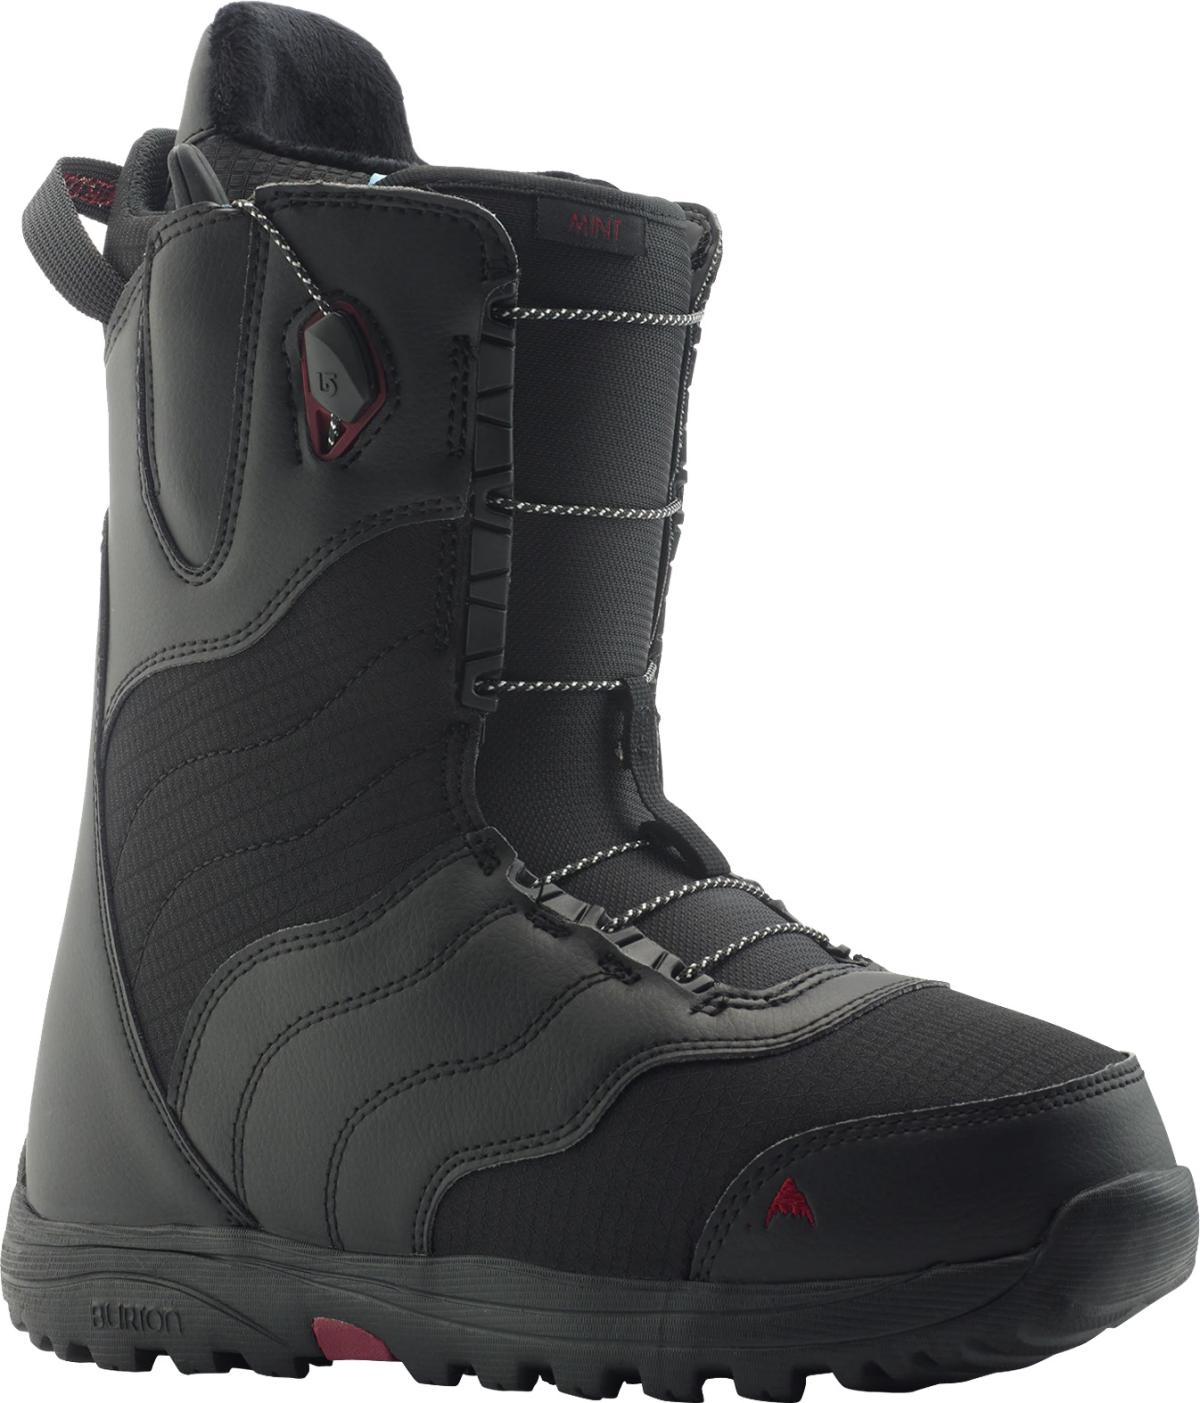 Burton Mint snowboard boots